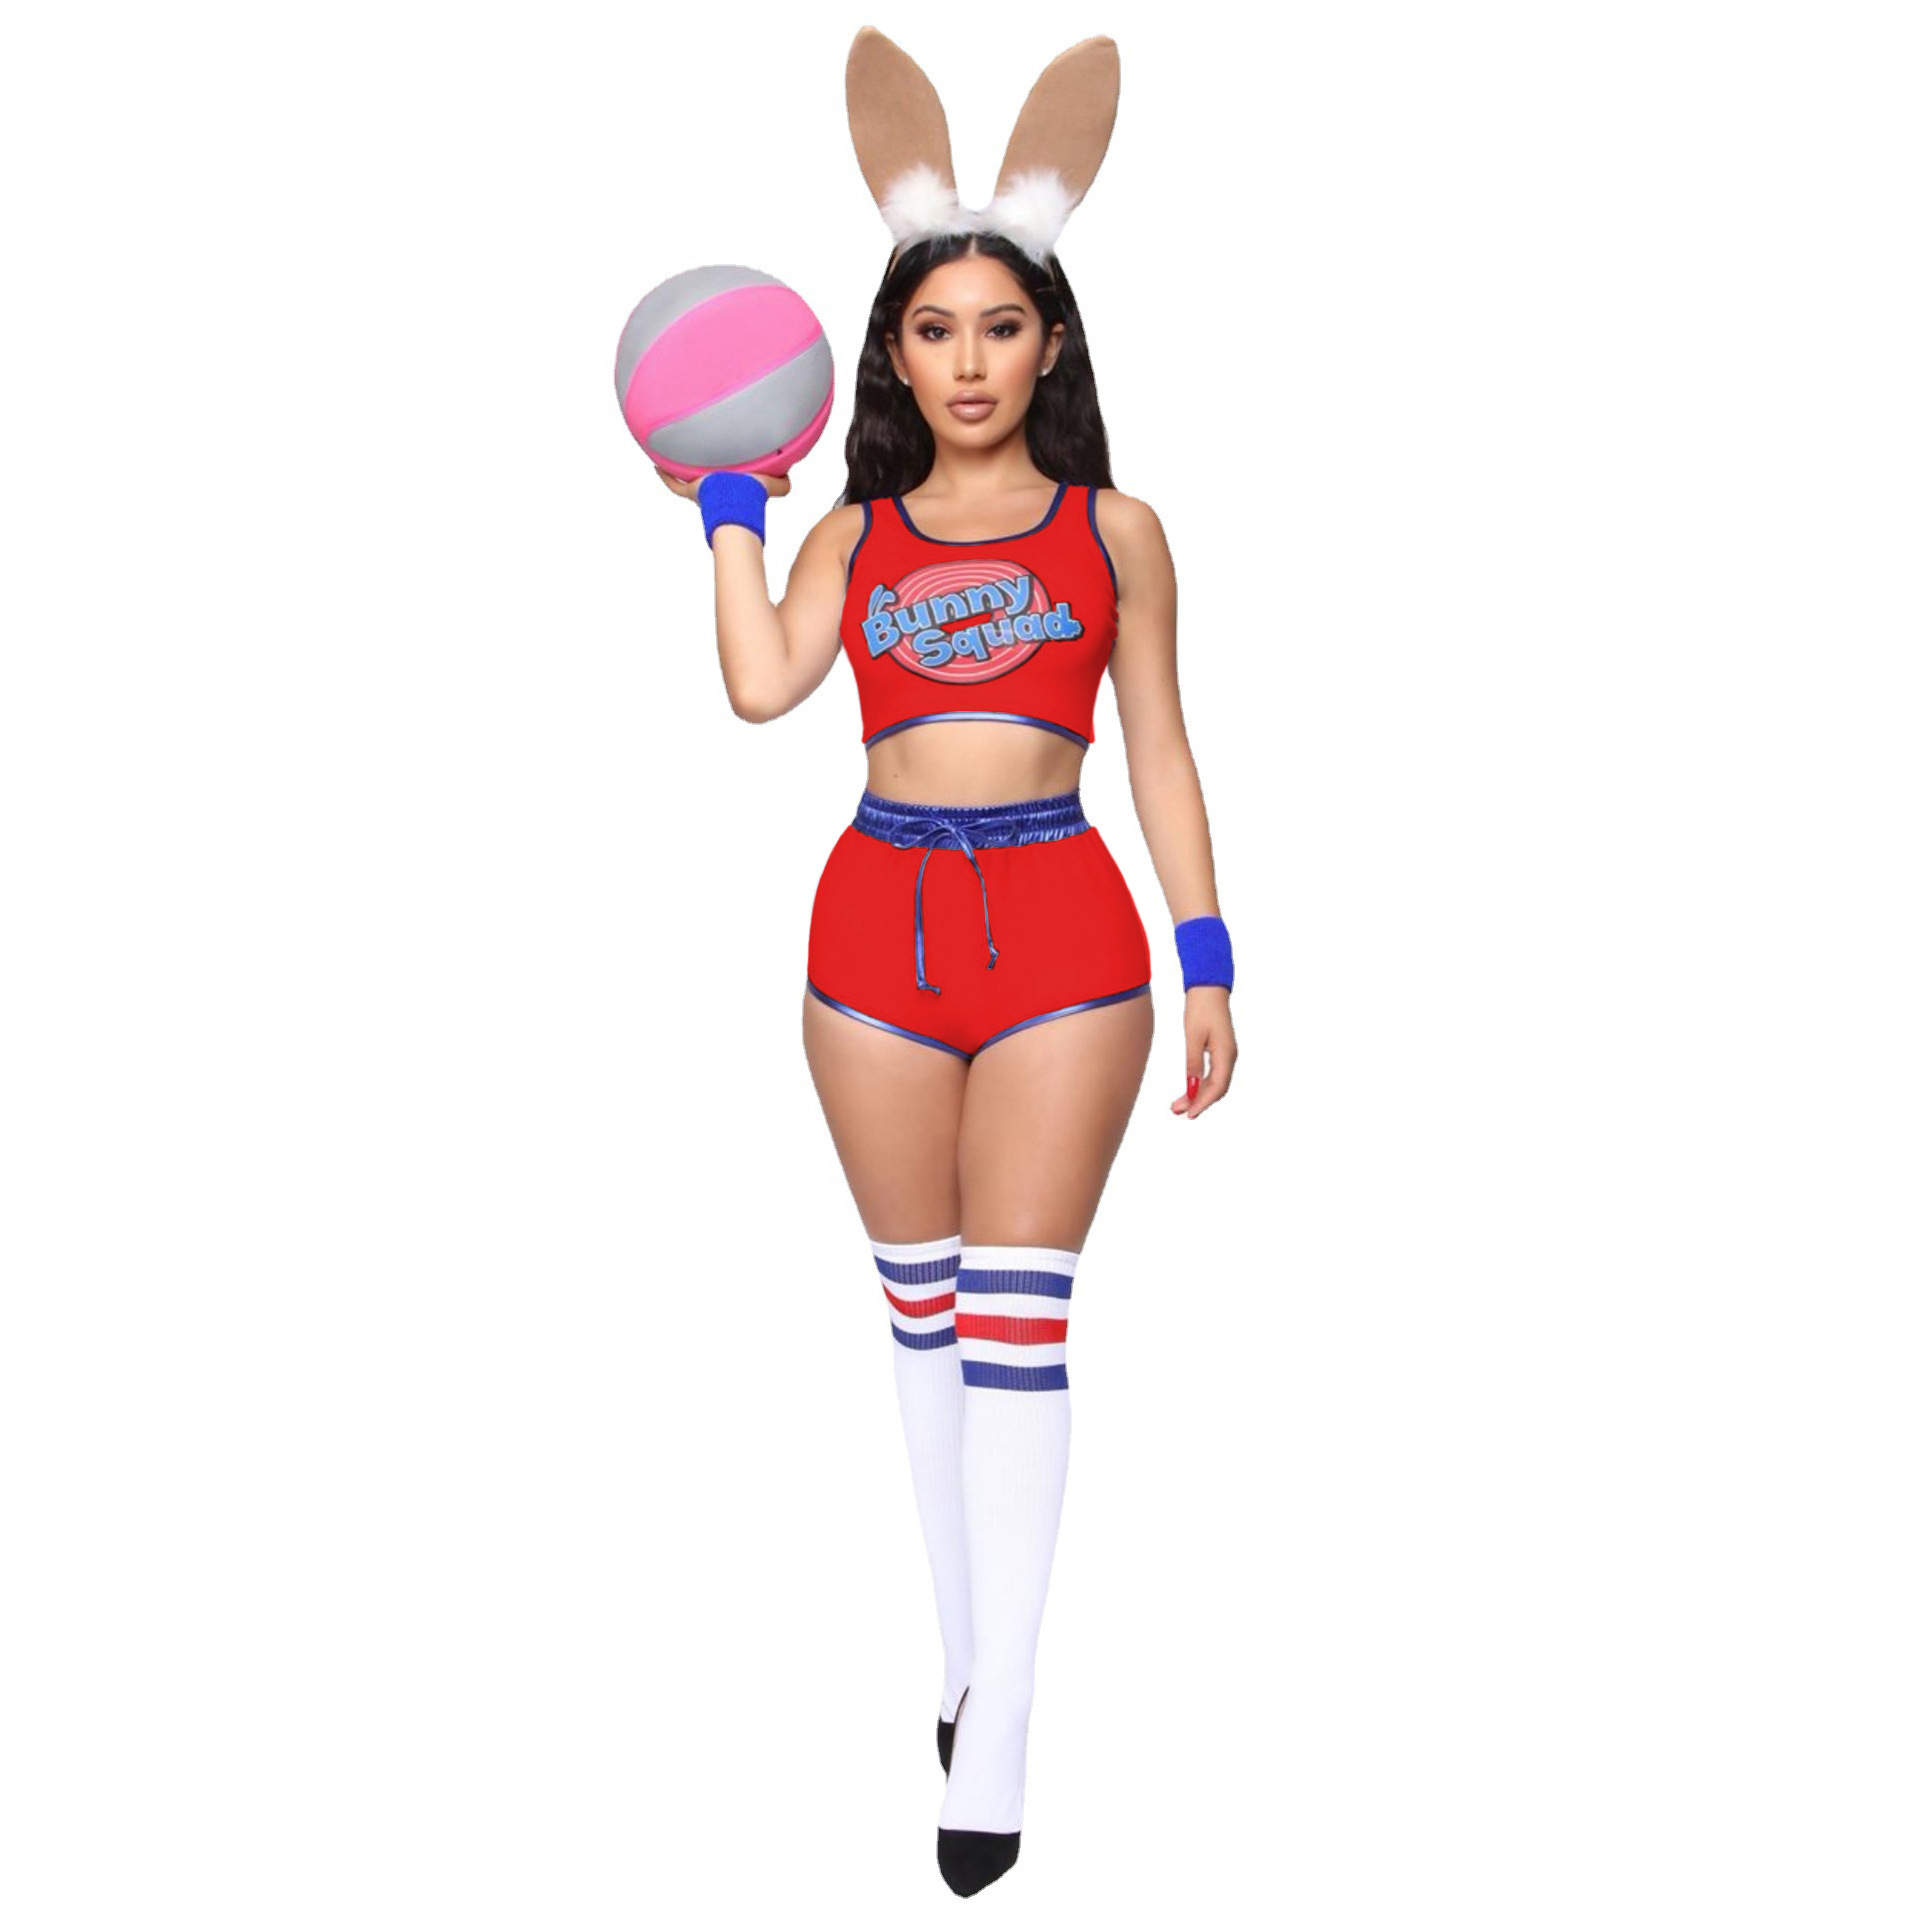 Lola Bunny Costume, Air Dunk 2 James Men Basketball Jersey Suit